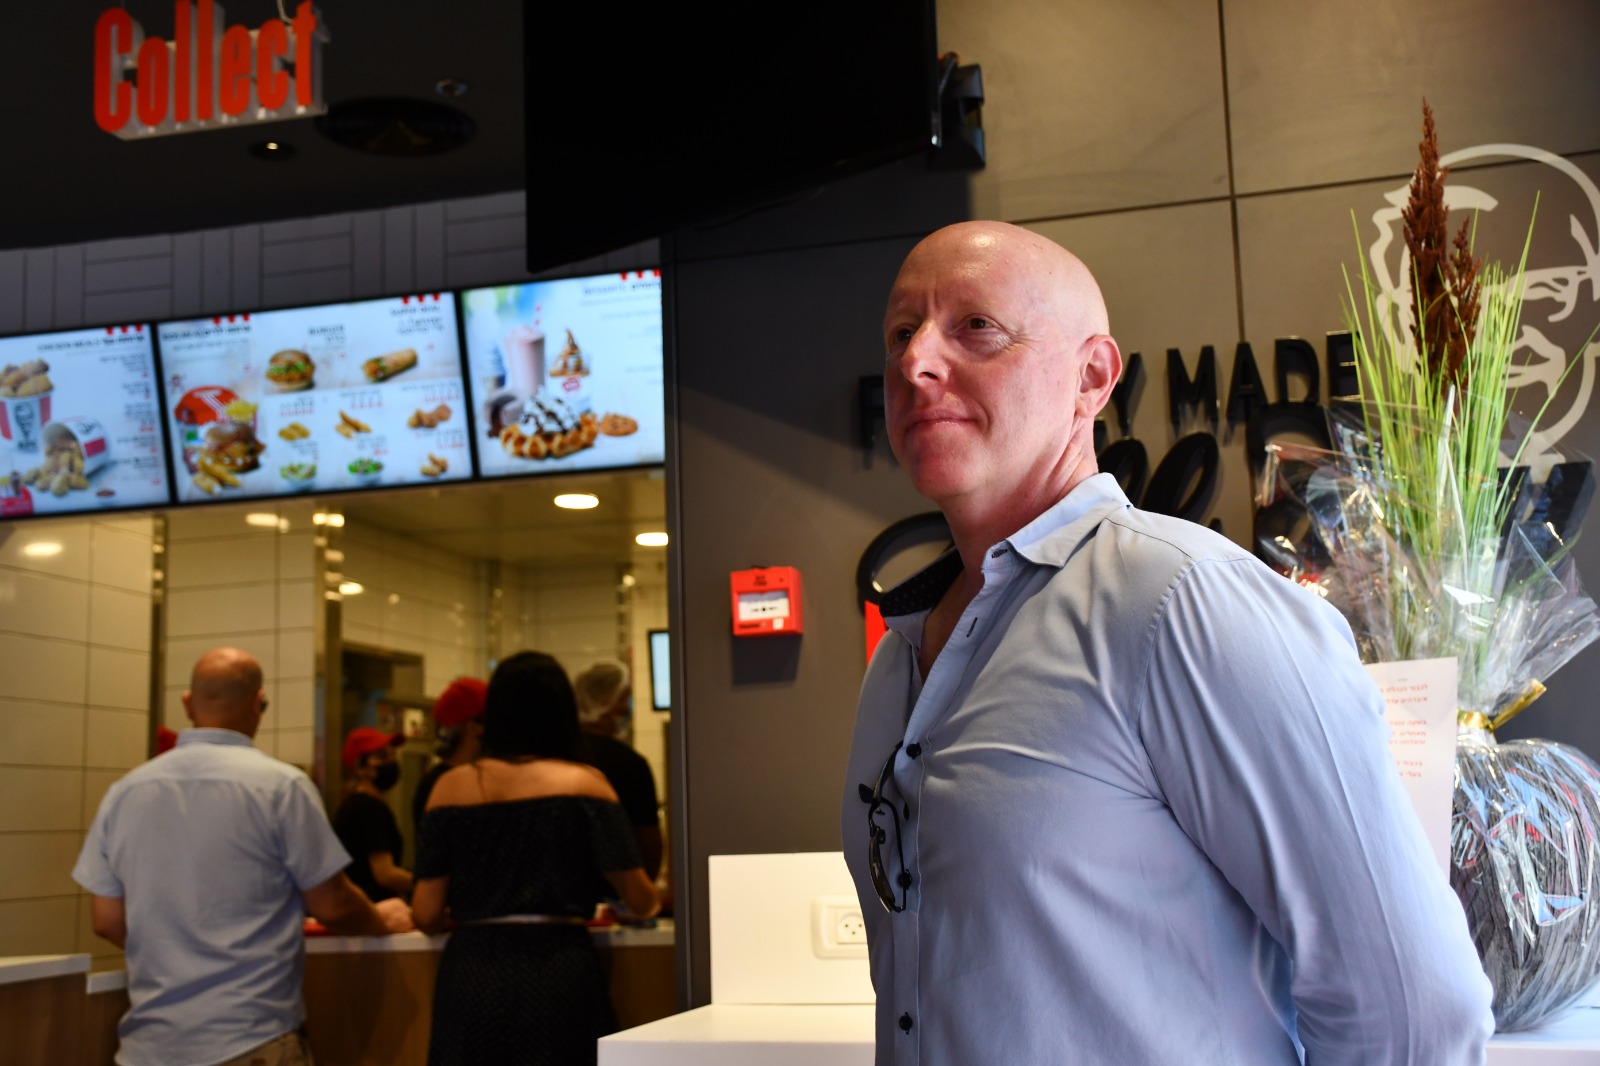 غداً: افتتاح فرع جديد لسلسلة مطاعم KFC في الرملة 